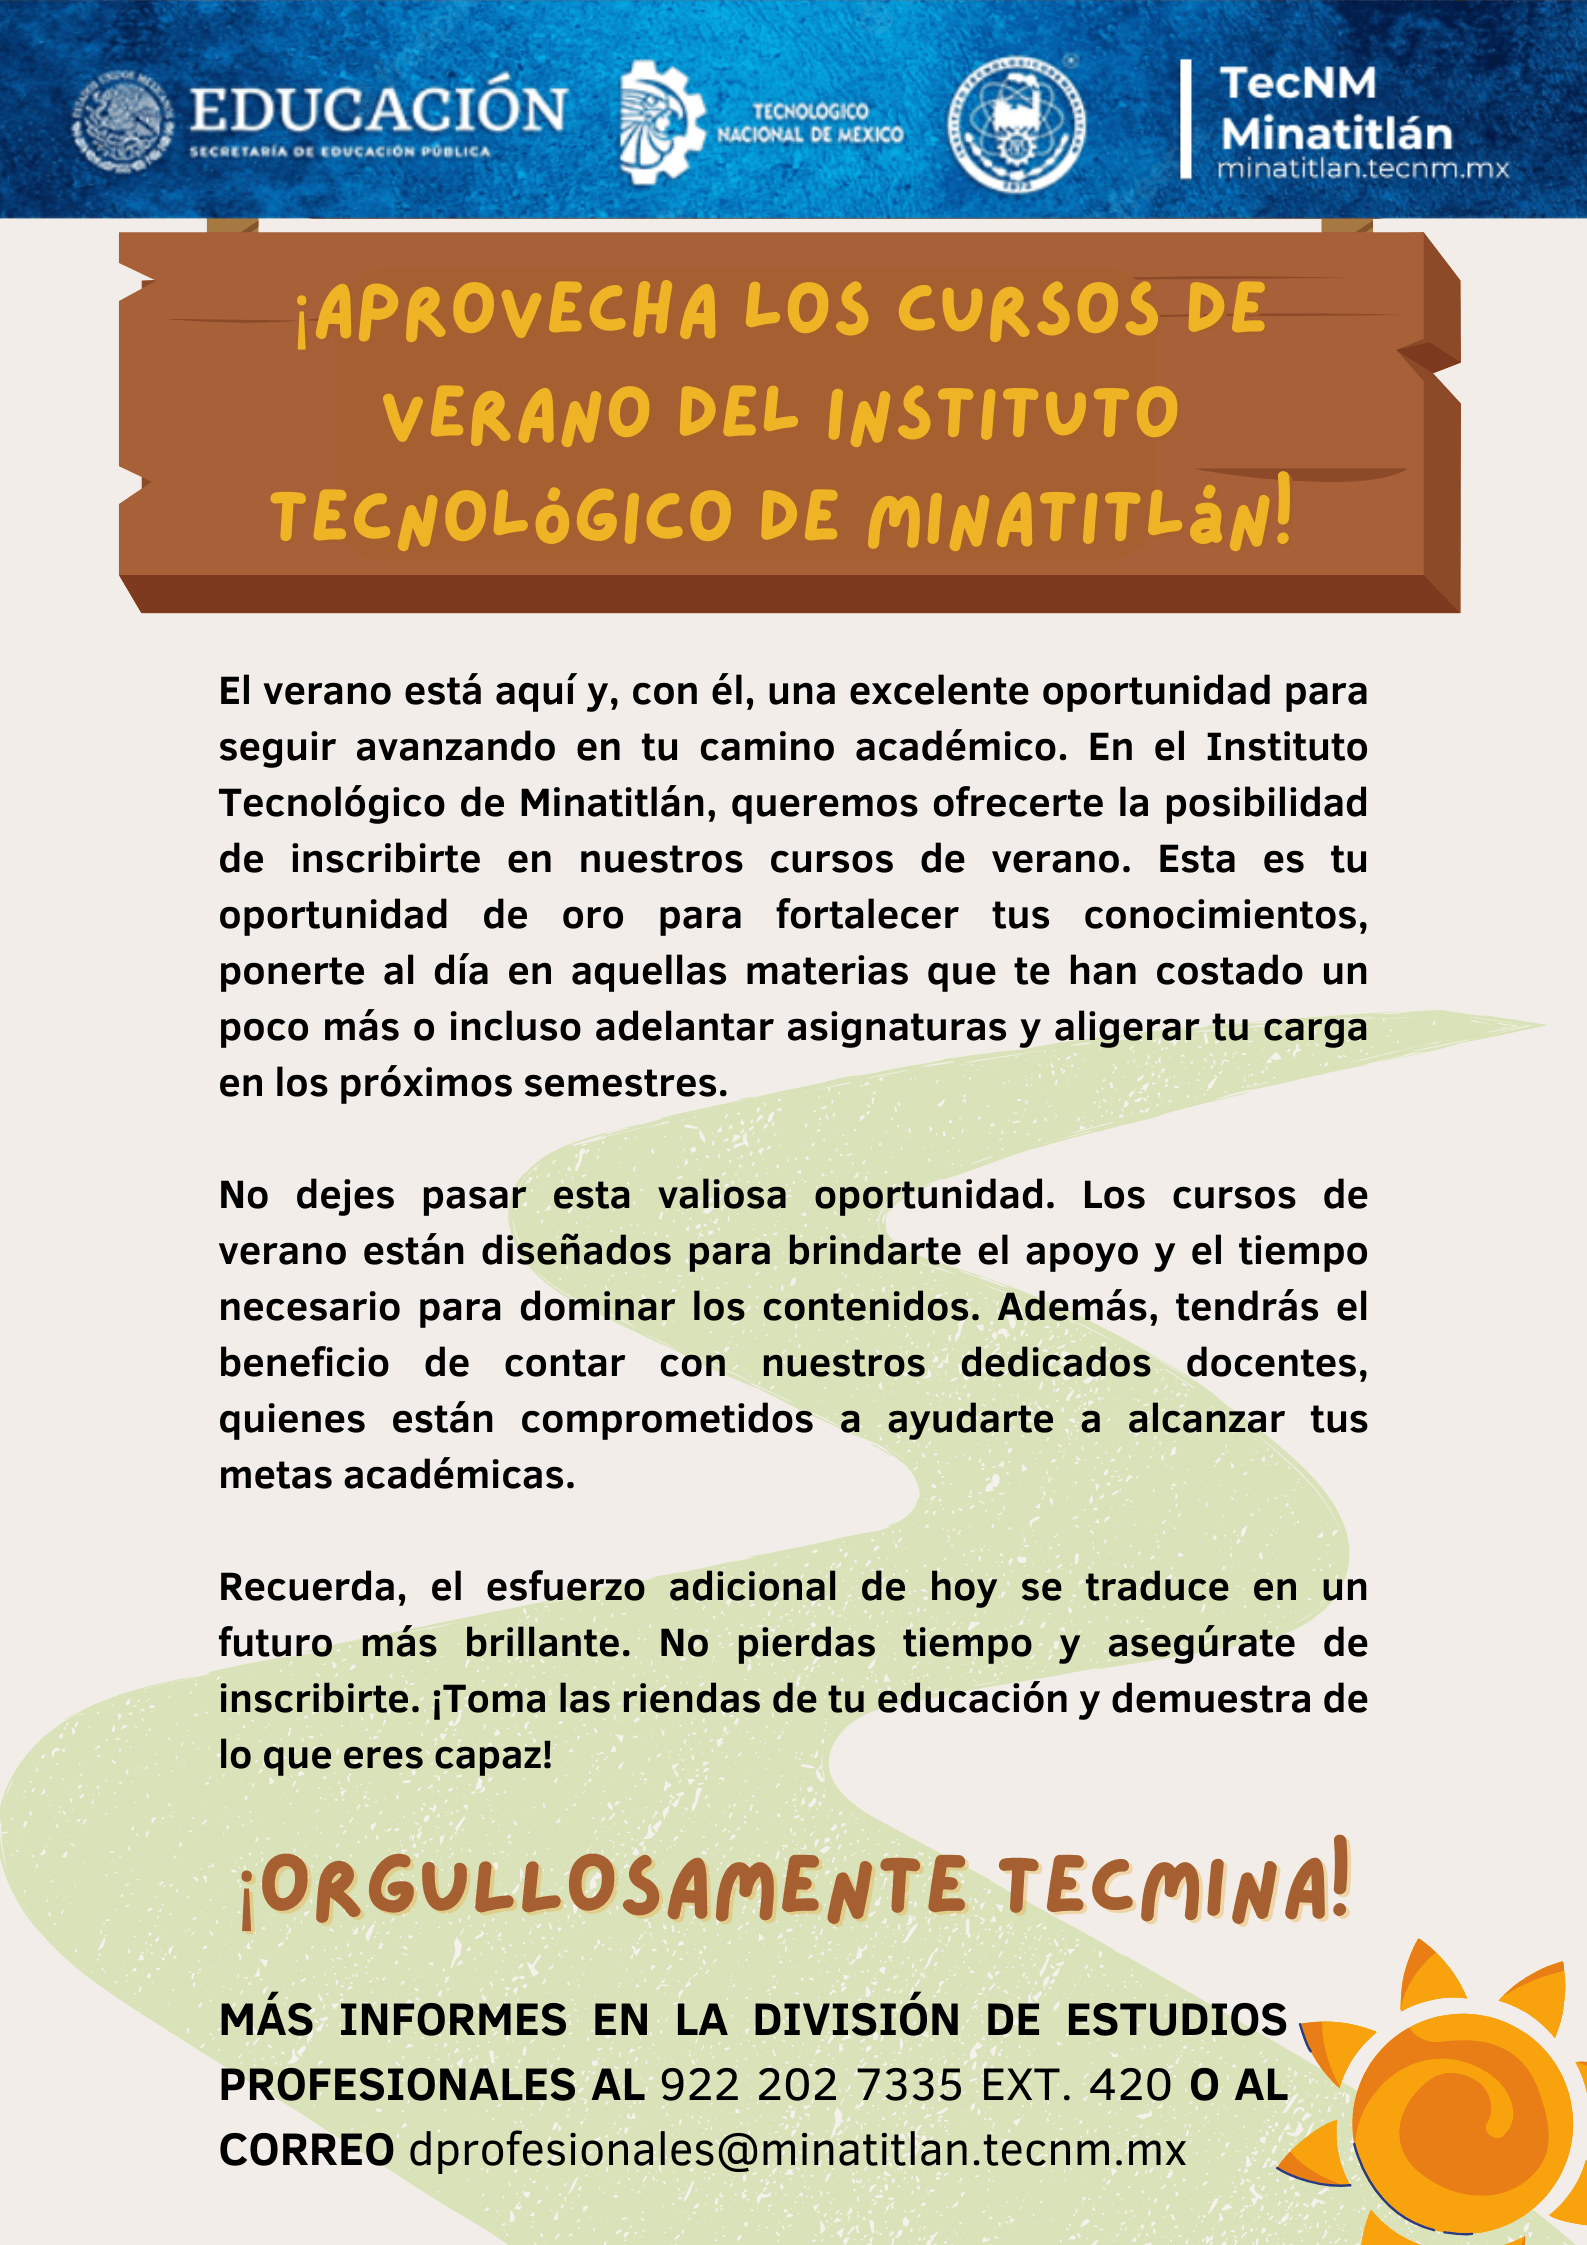 ¡APROVECHA LOS CURSOS DE VERANO DEL INSTITUTO TECNOLÓGICO DE MINATITLÁN!